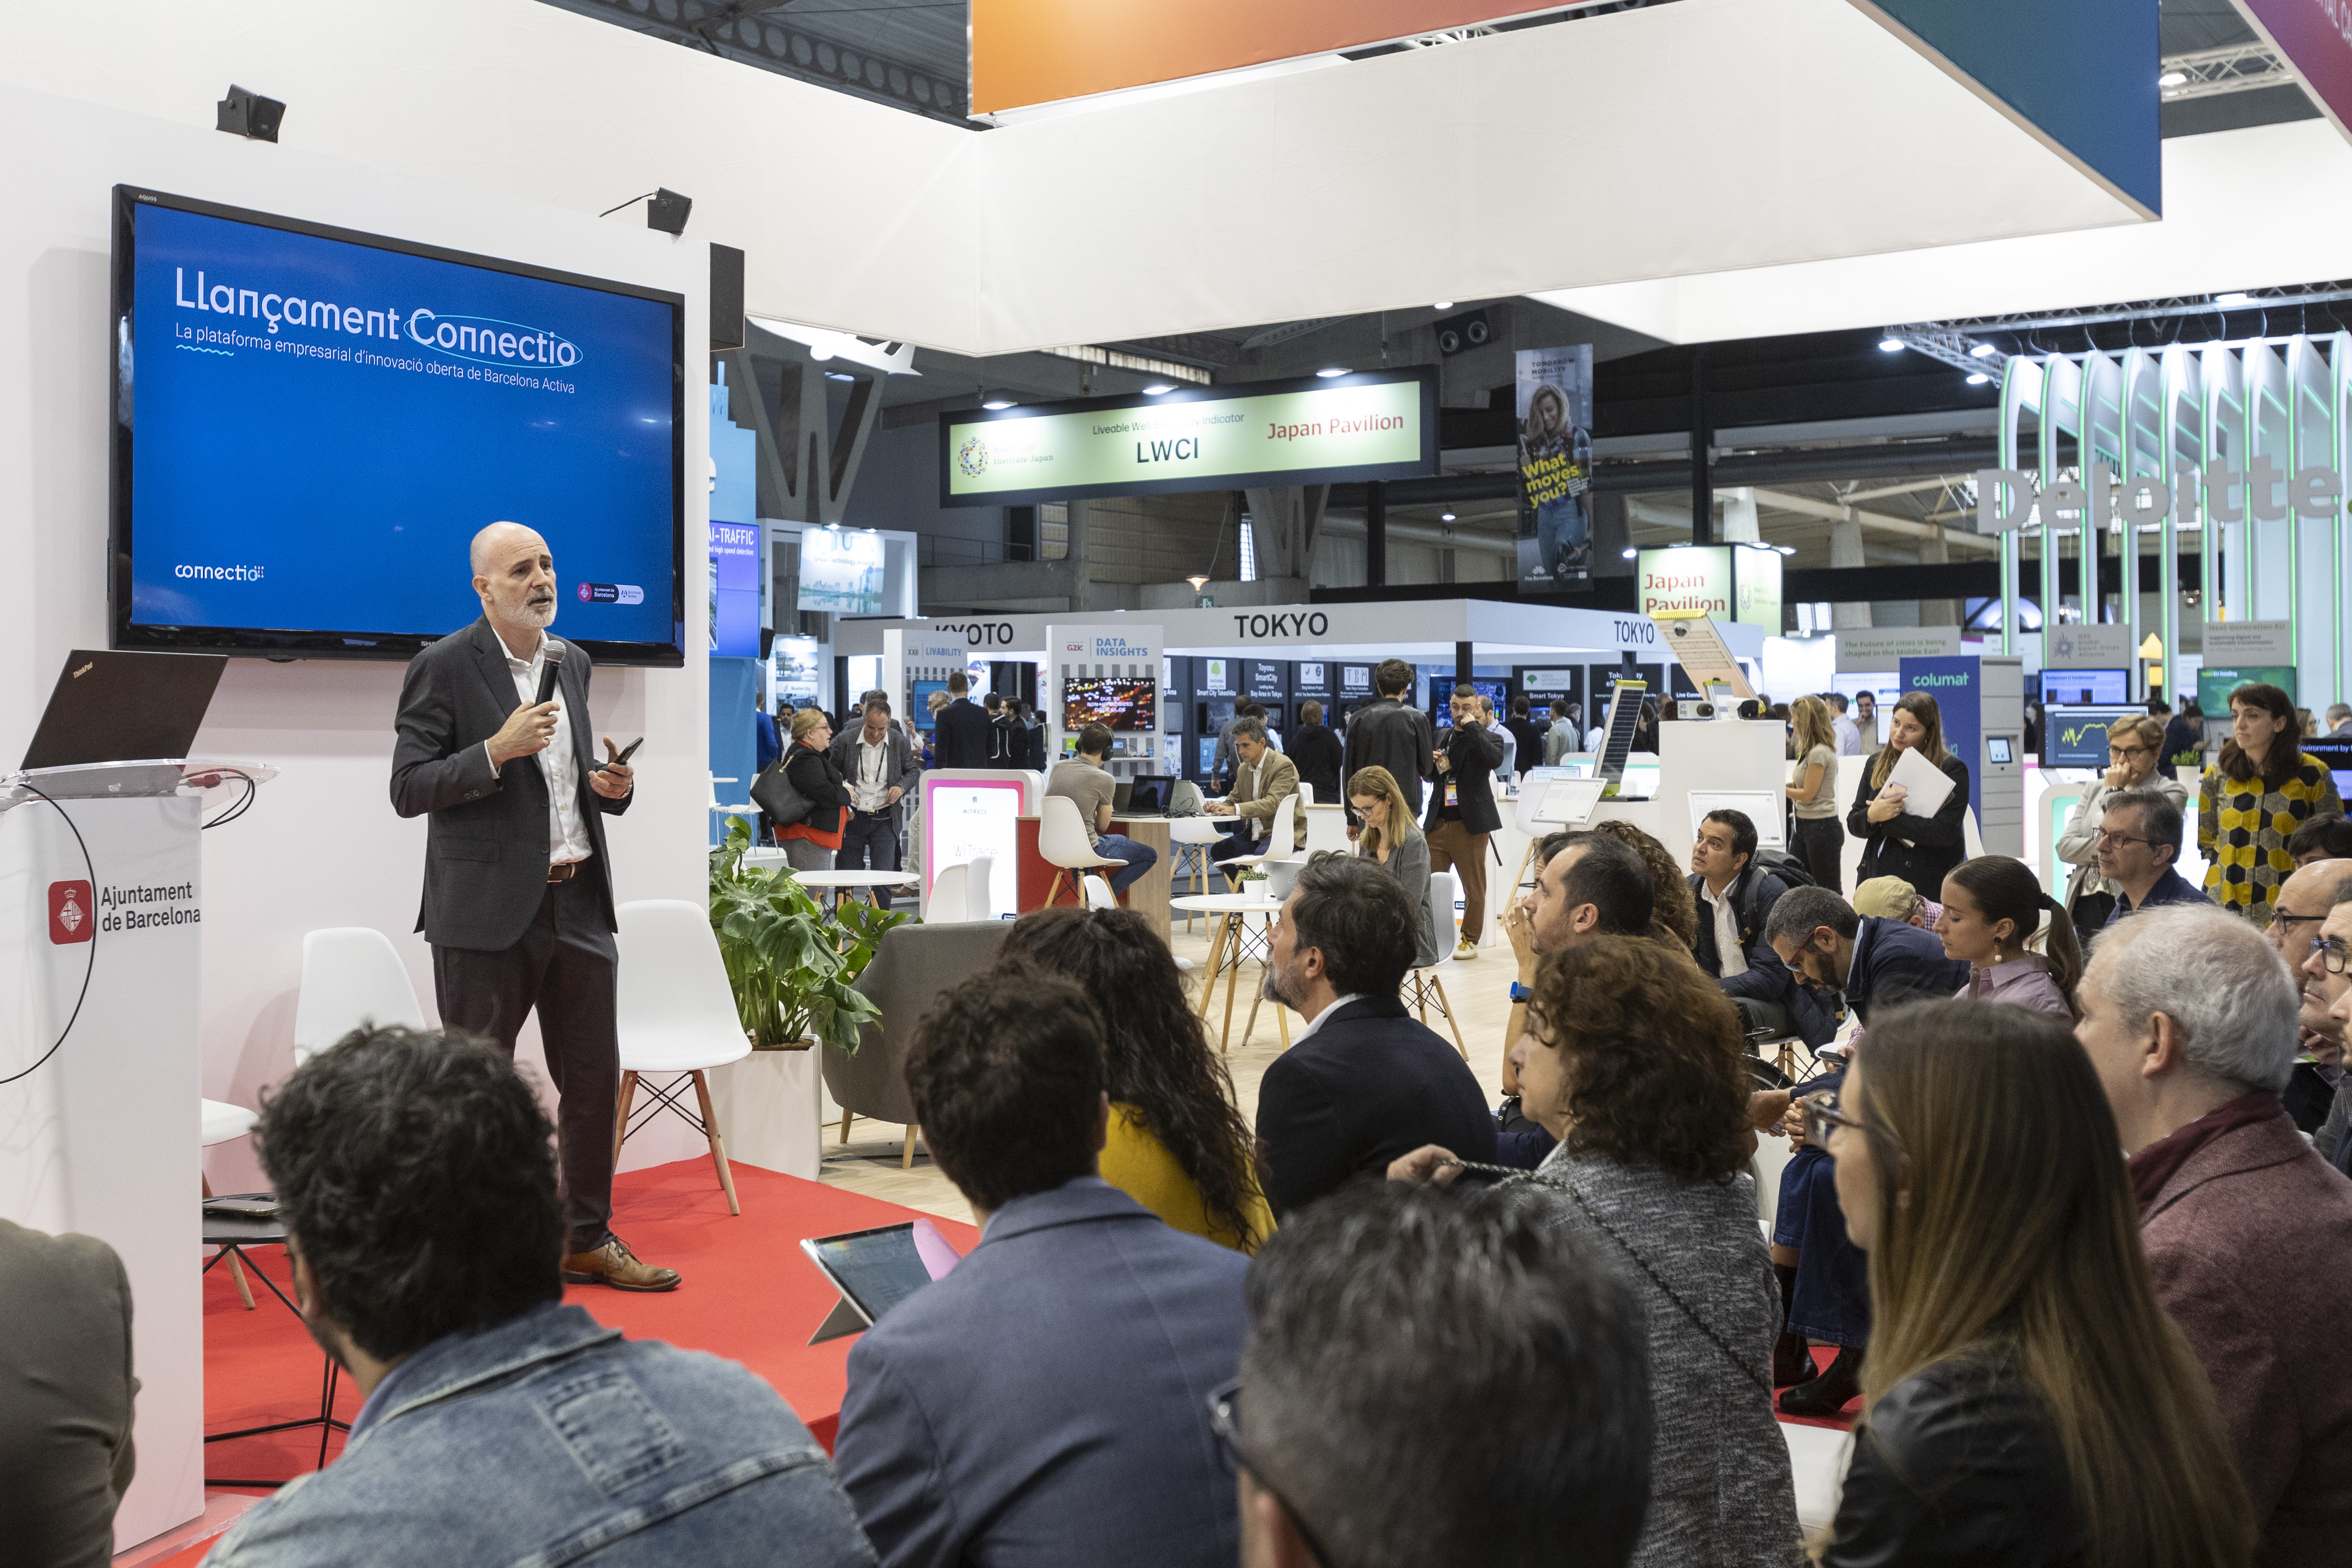 Una imatge de la presentació del projecte Connectio durant el congrés internacional Smart City Expo